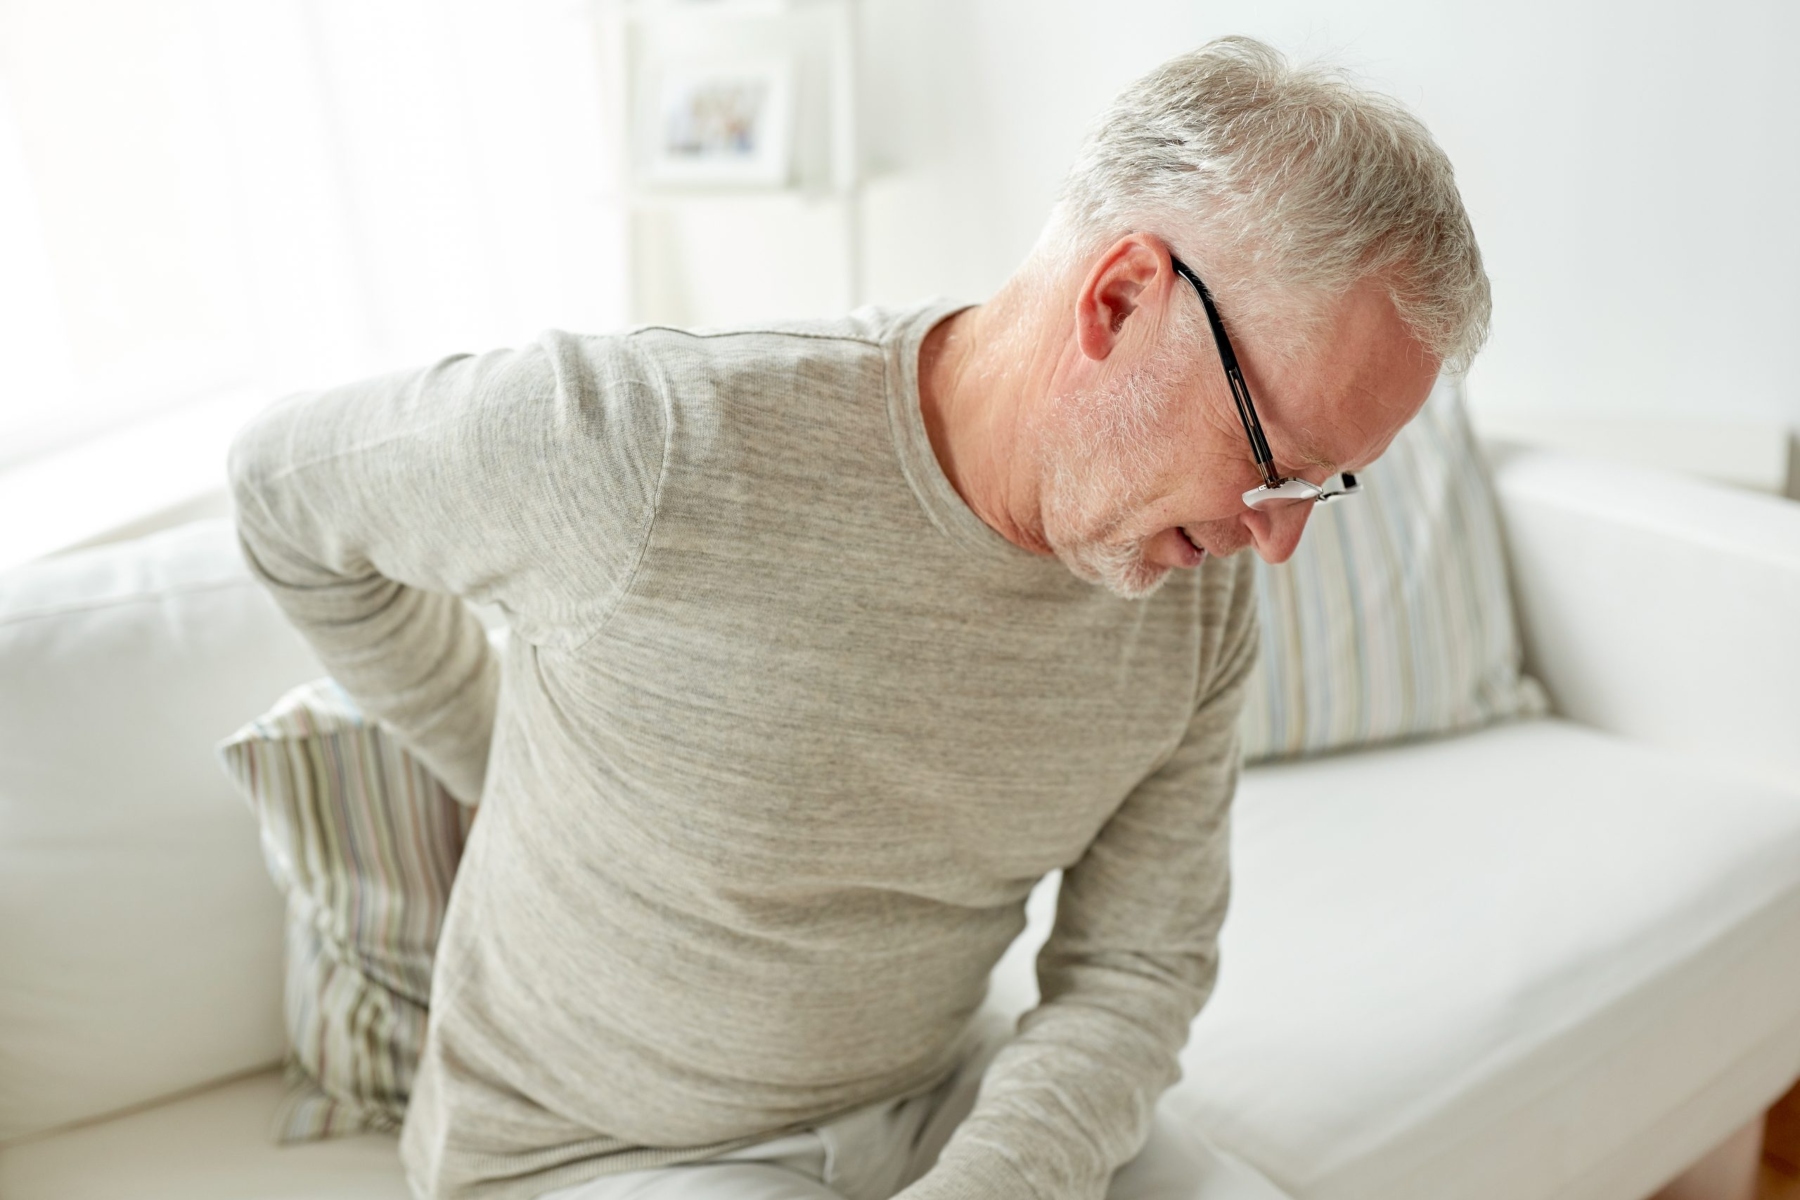 Χρόνιος πόνος: Μπορεί να εμφανιστεί στην πλάτη λόγω νευρολογικών επιπλοκών;